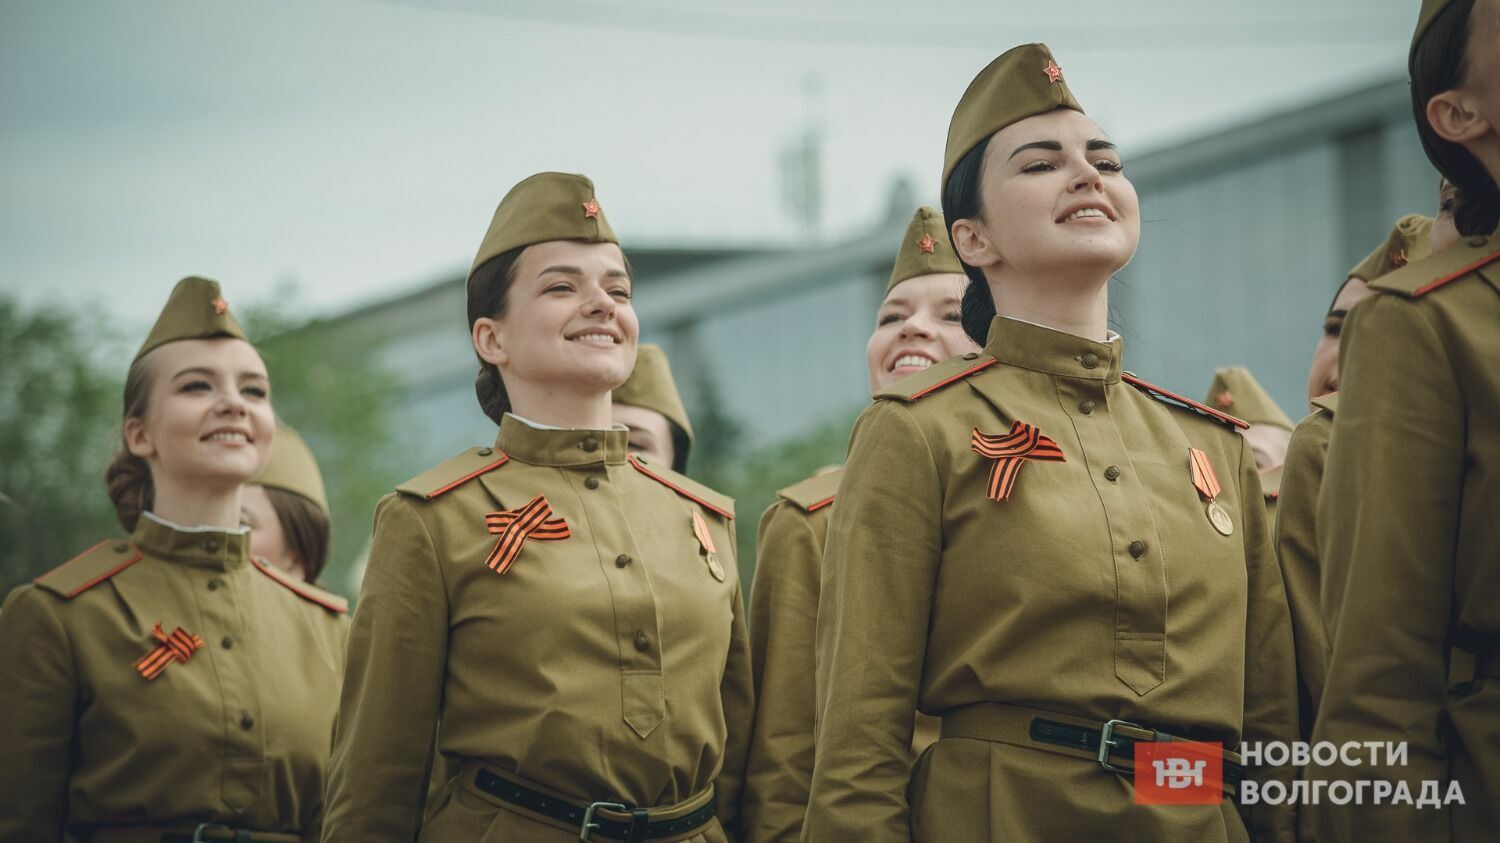 Девушки в военной форме традиционно становятся украшением парада в Волгограде